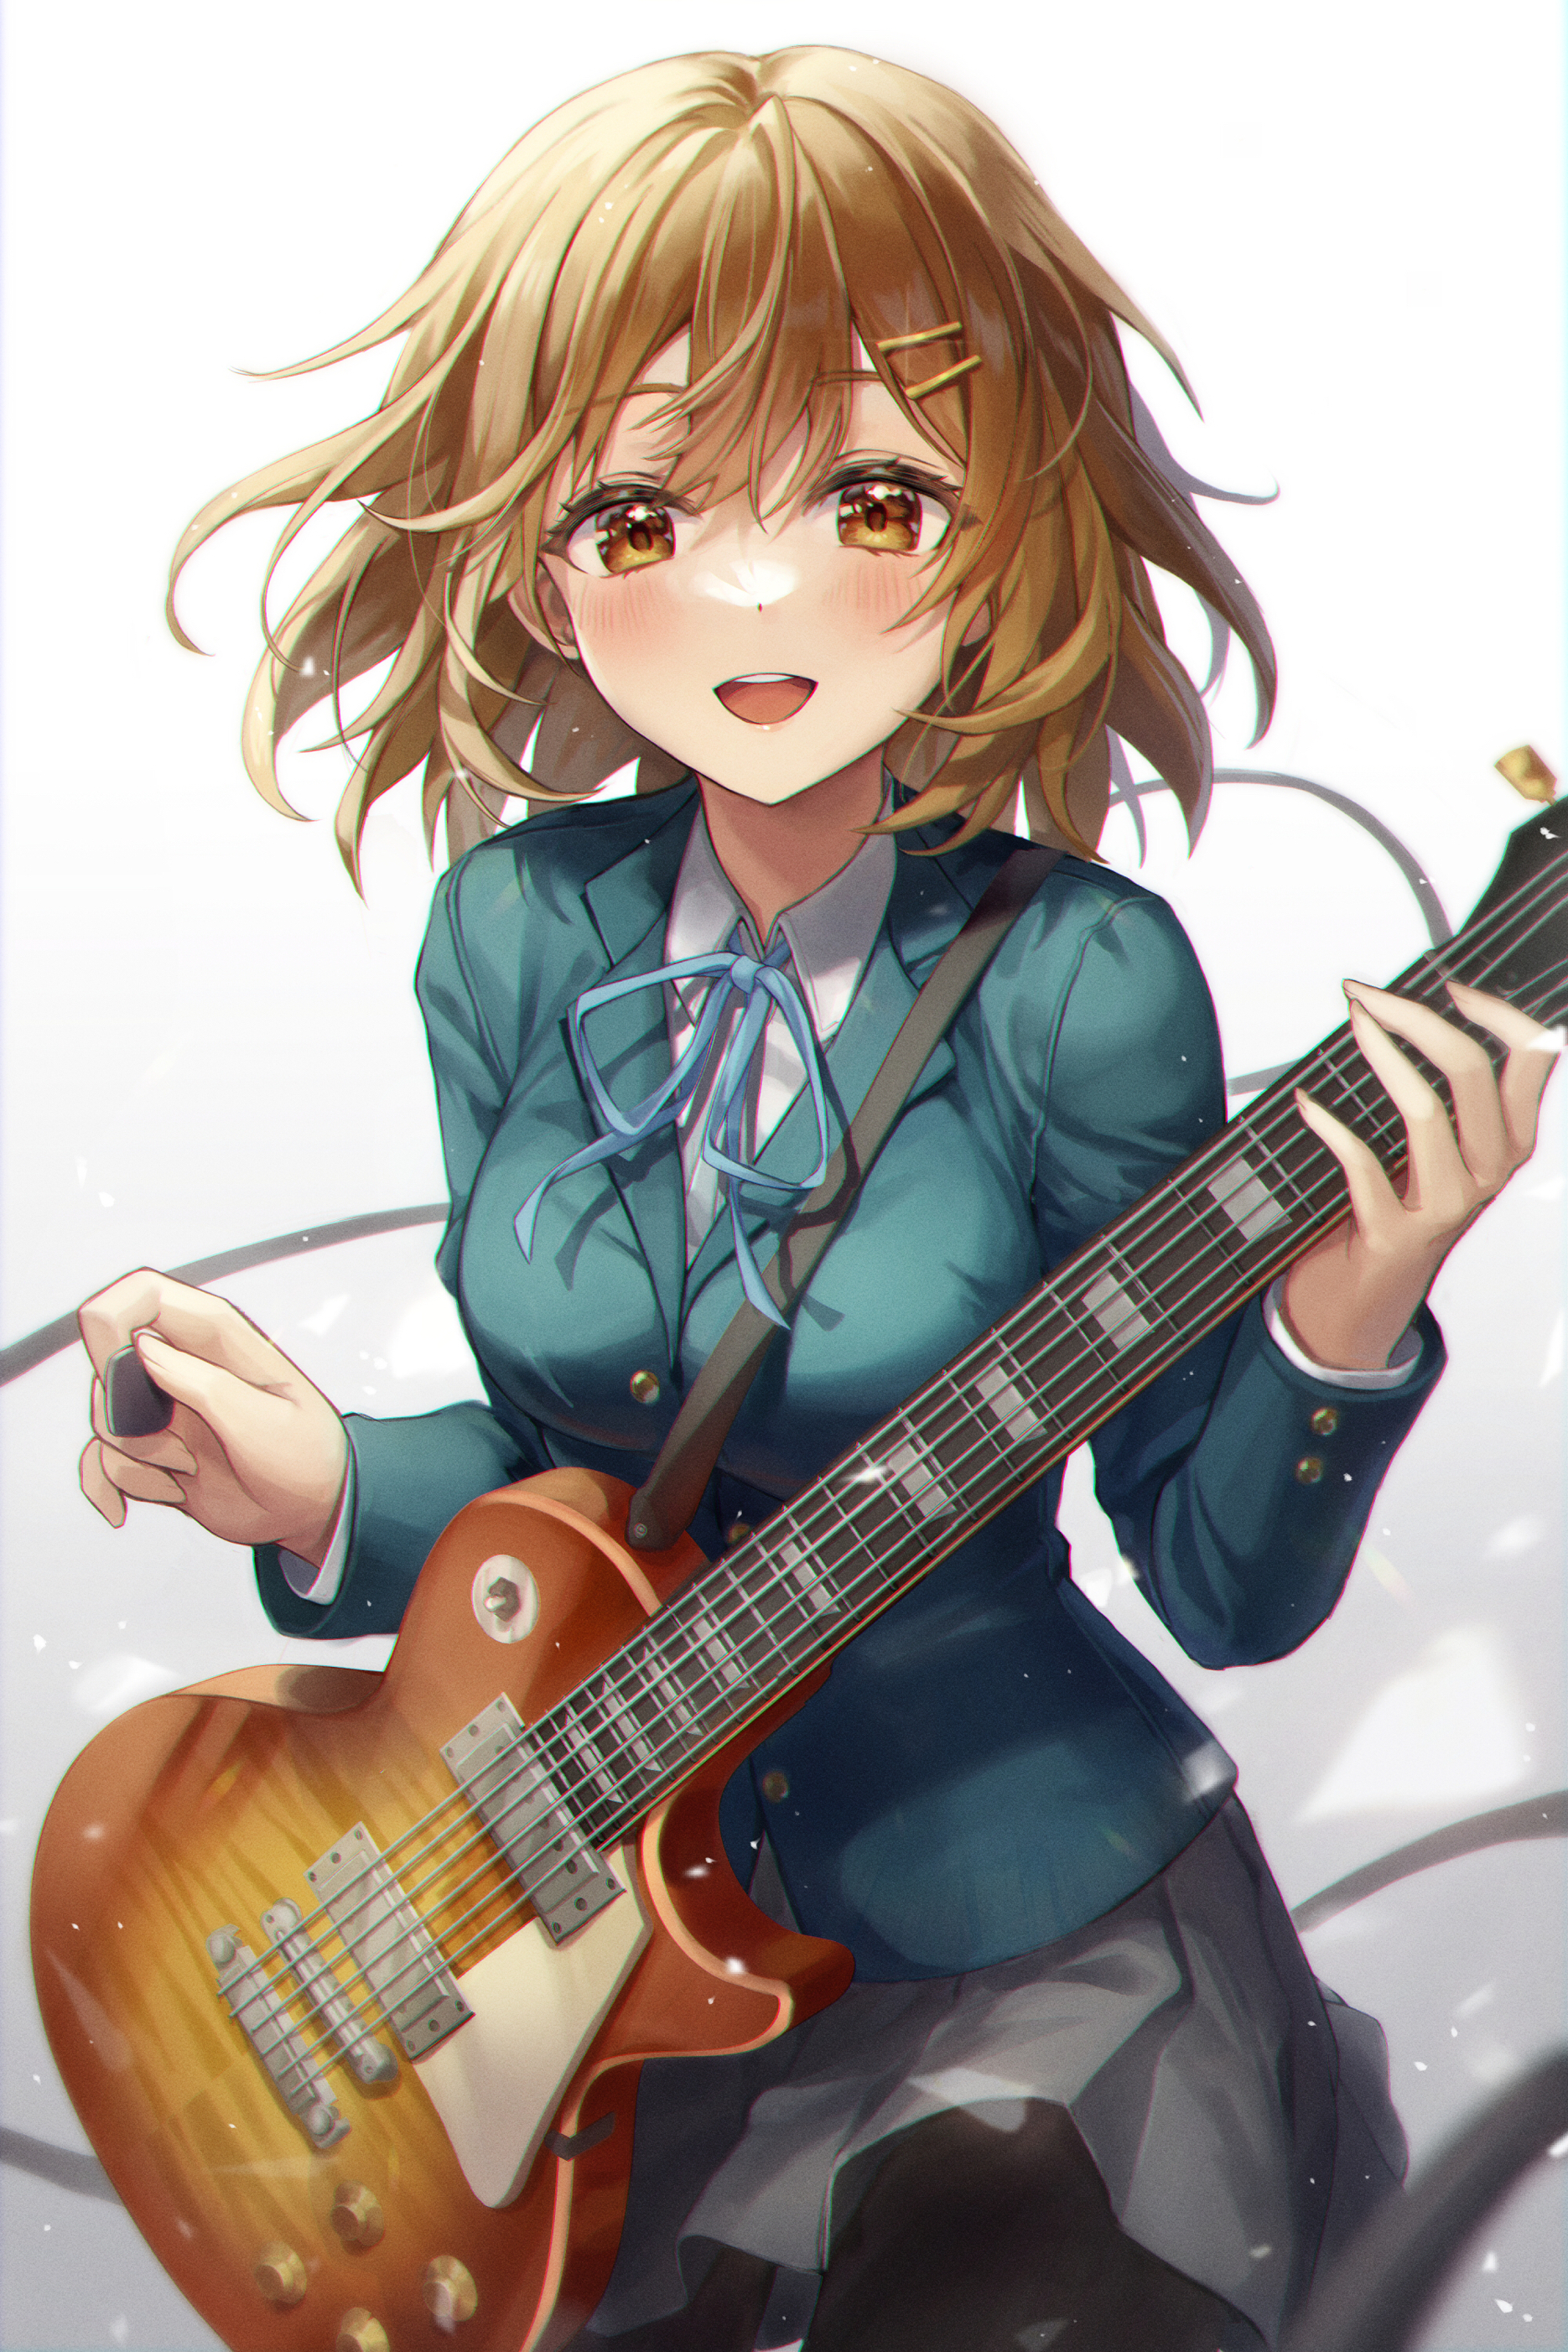 Anime Girls Girl Band Vertical Schoolgirl School Uniform Brunette Brown Eyes Blushing Guitar K ON 1870x2805